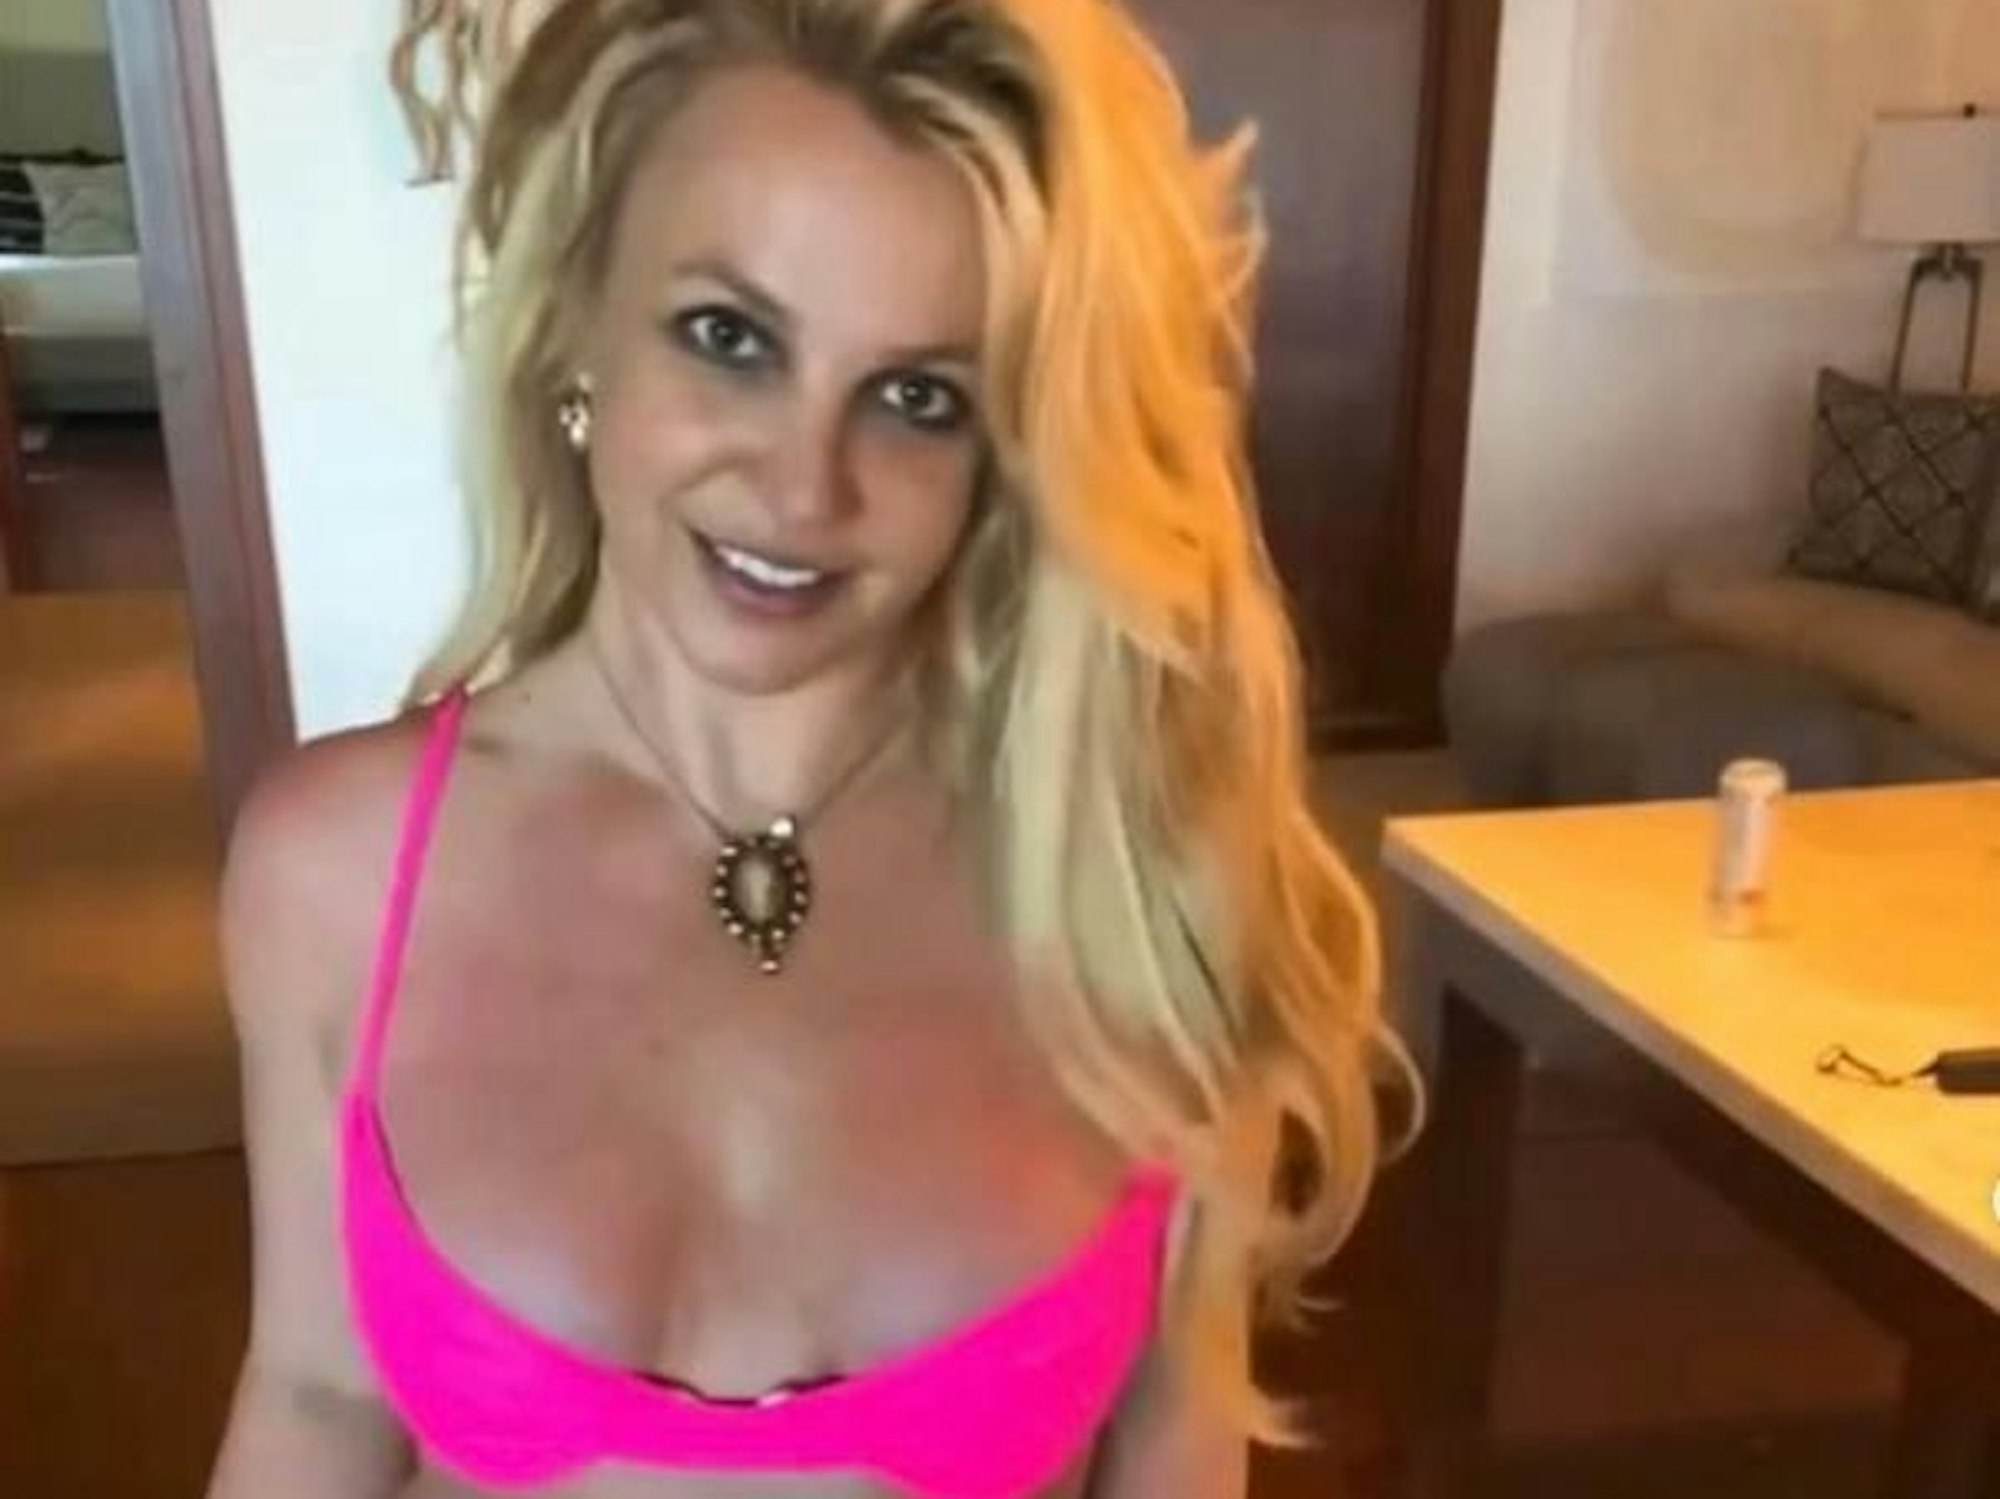 Britney Spears in Porno-Pose: Foto zeigt sie komplett nackt | Express